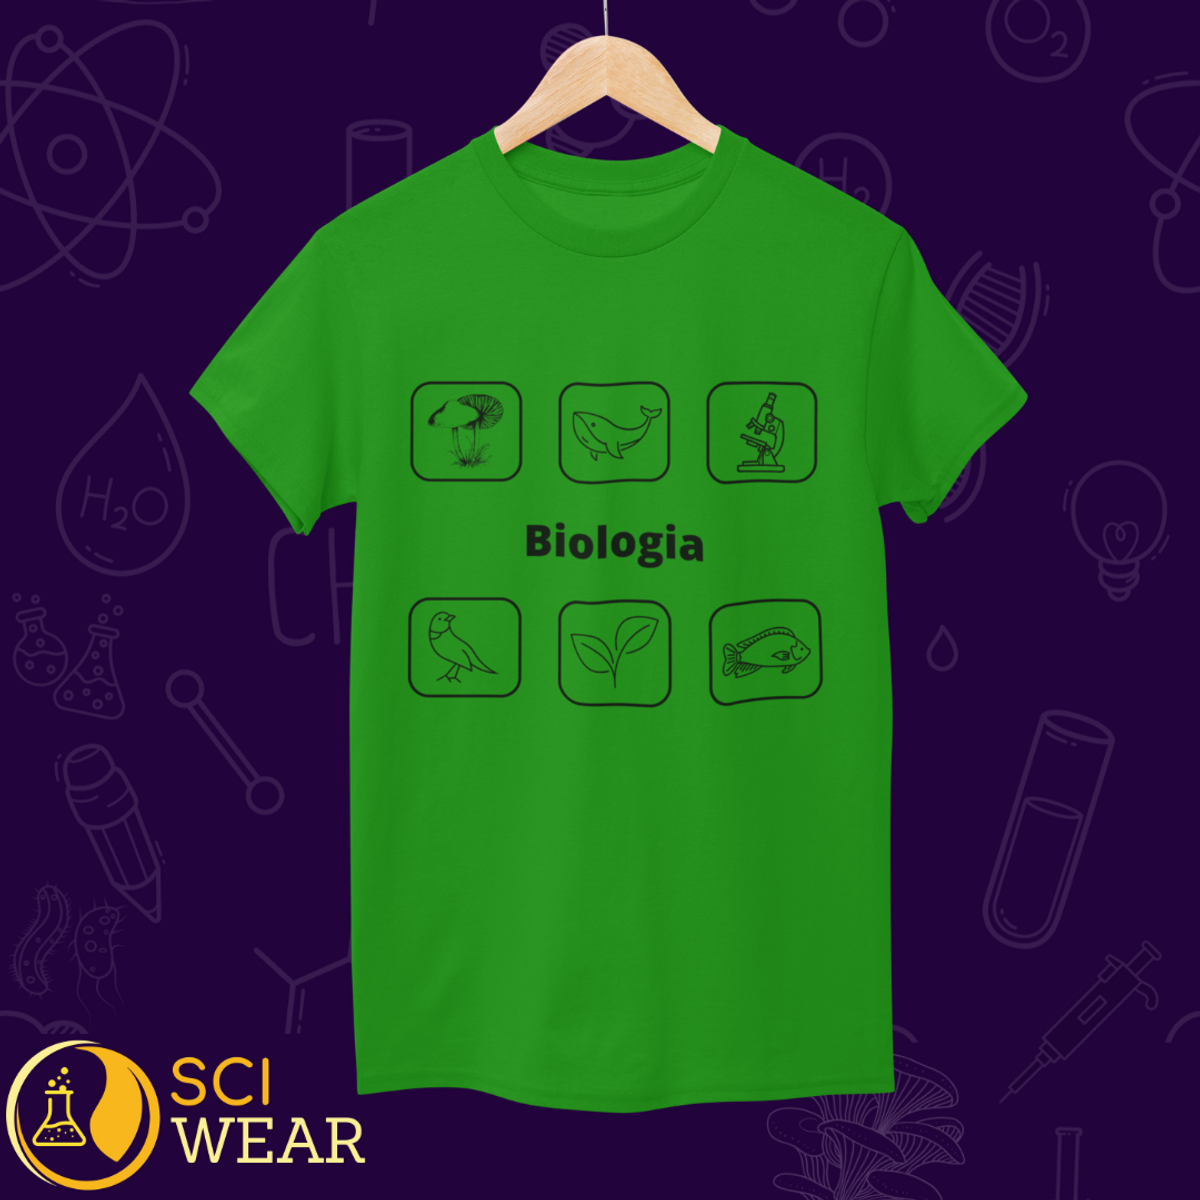 Nome do produto: Biologia - T-shirt